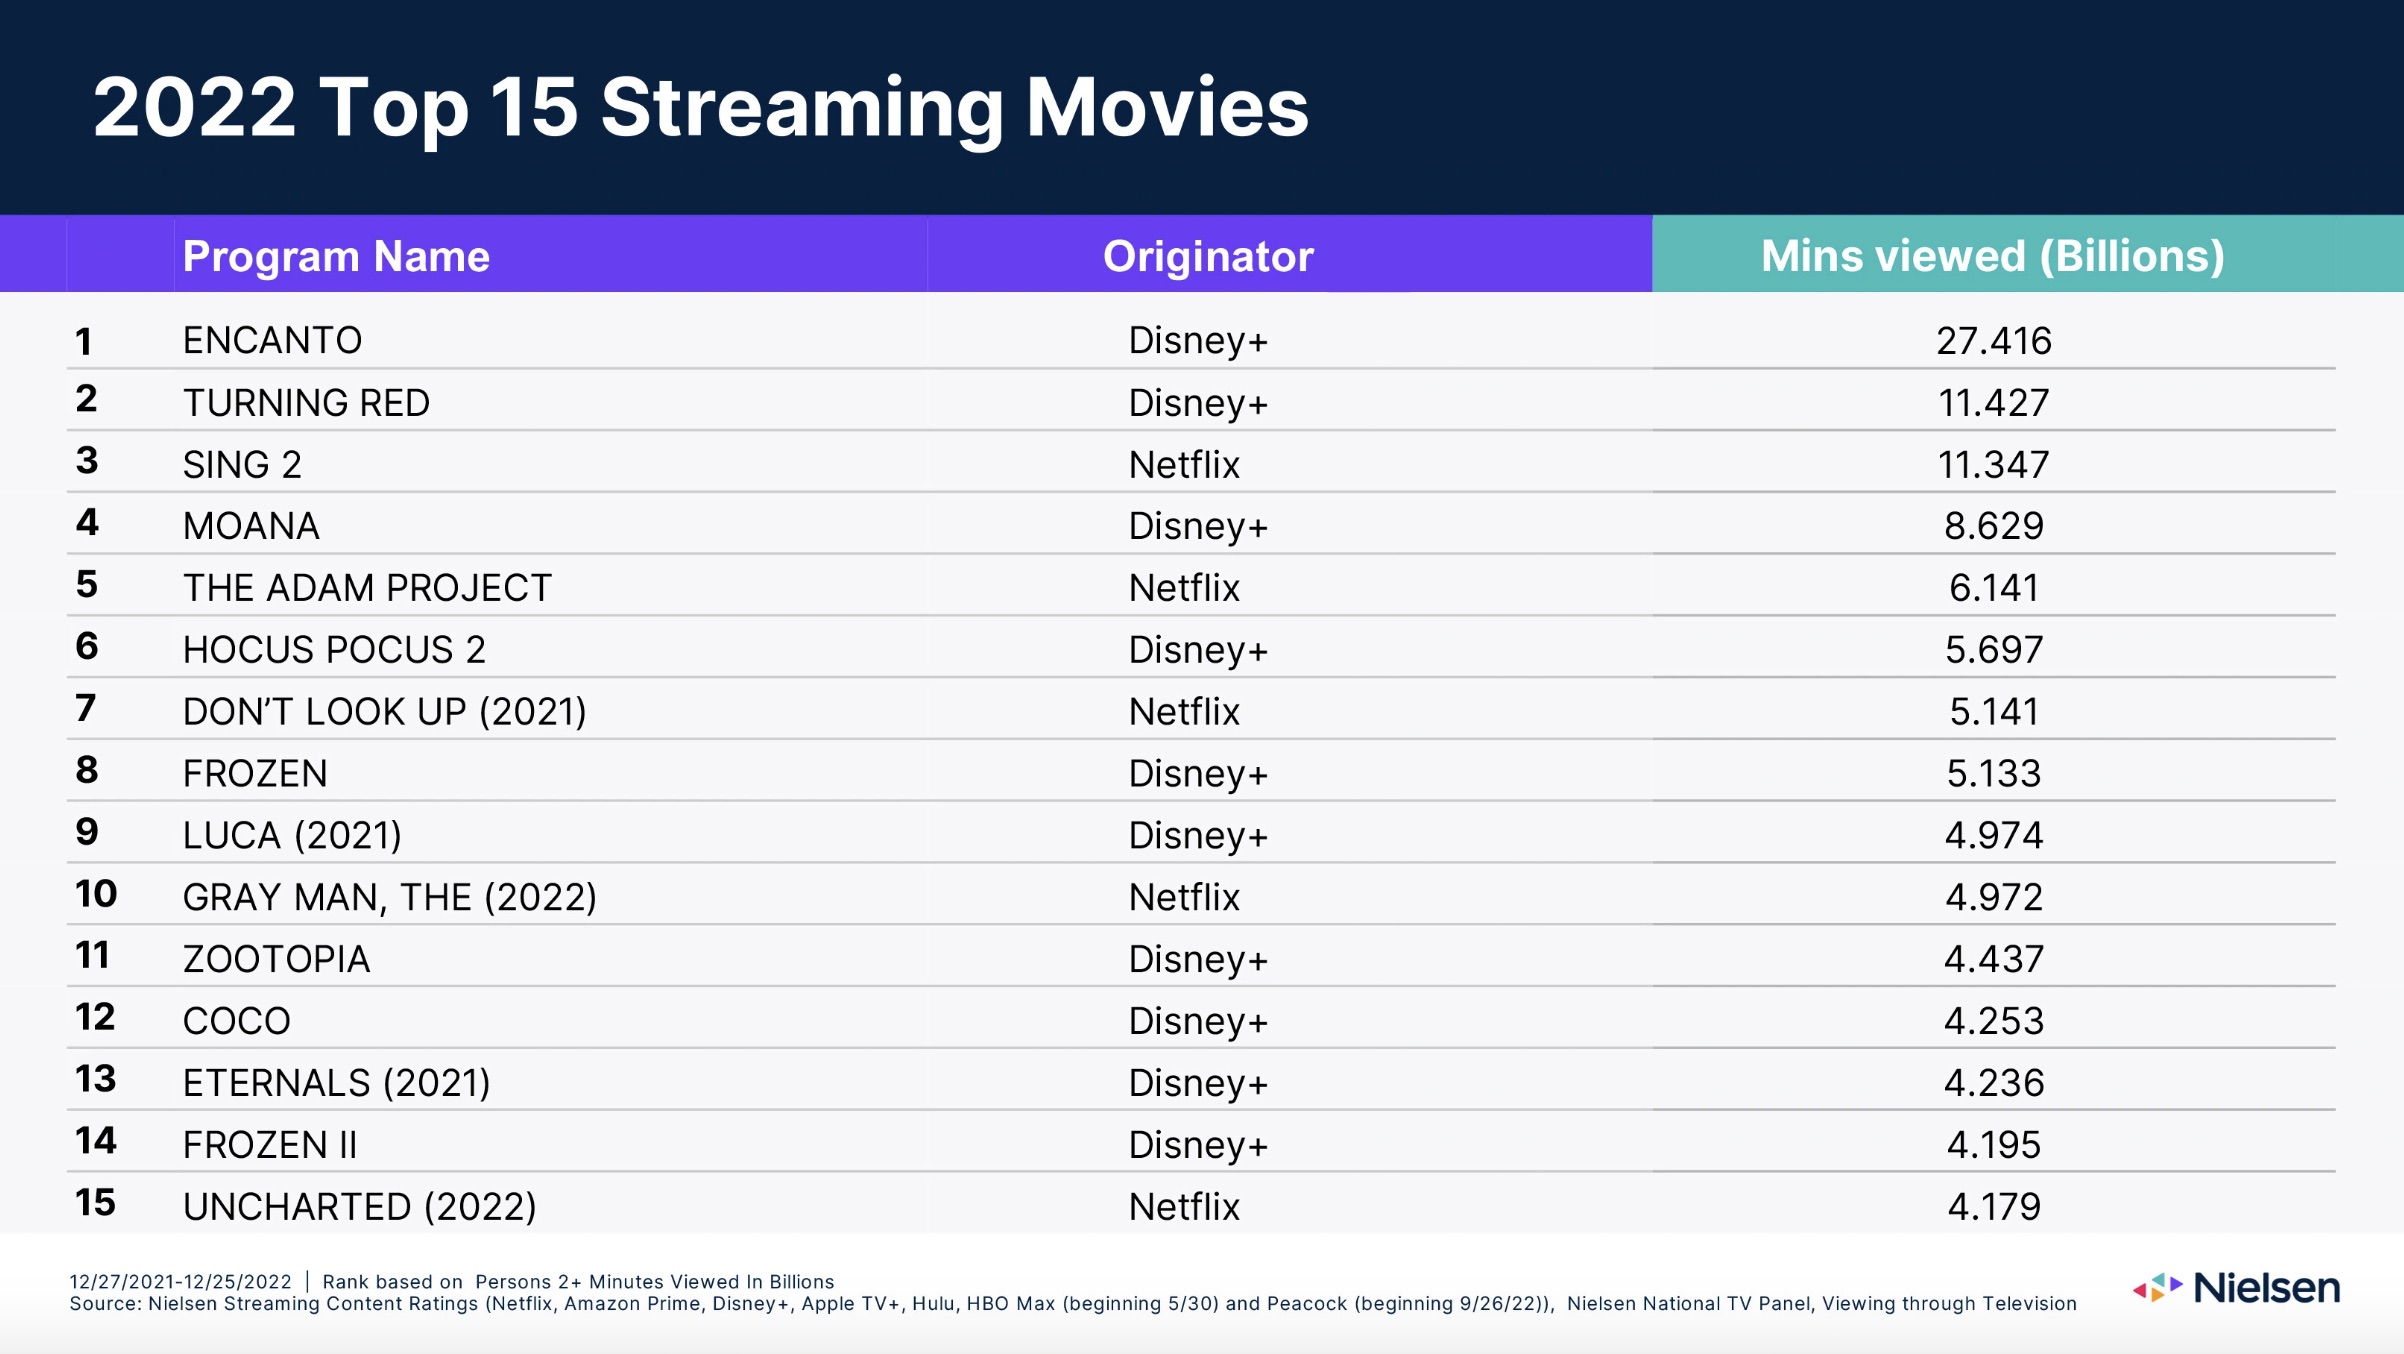 Tabela dos 15 melhores filmes de streaming da Nielsen em 2022